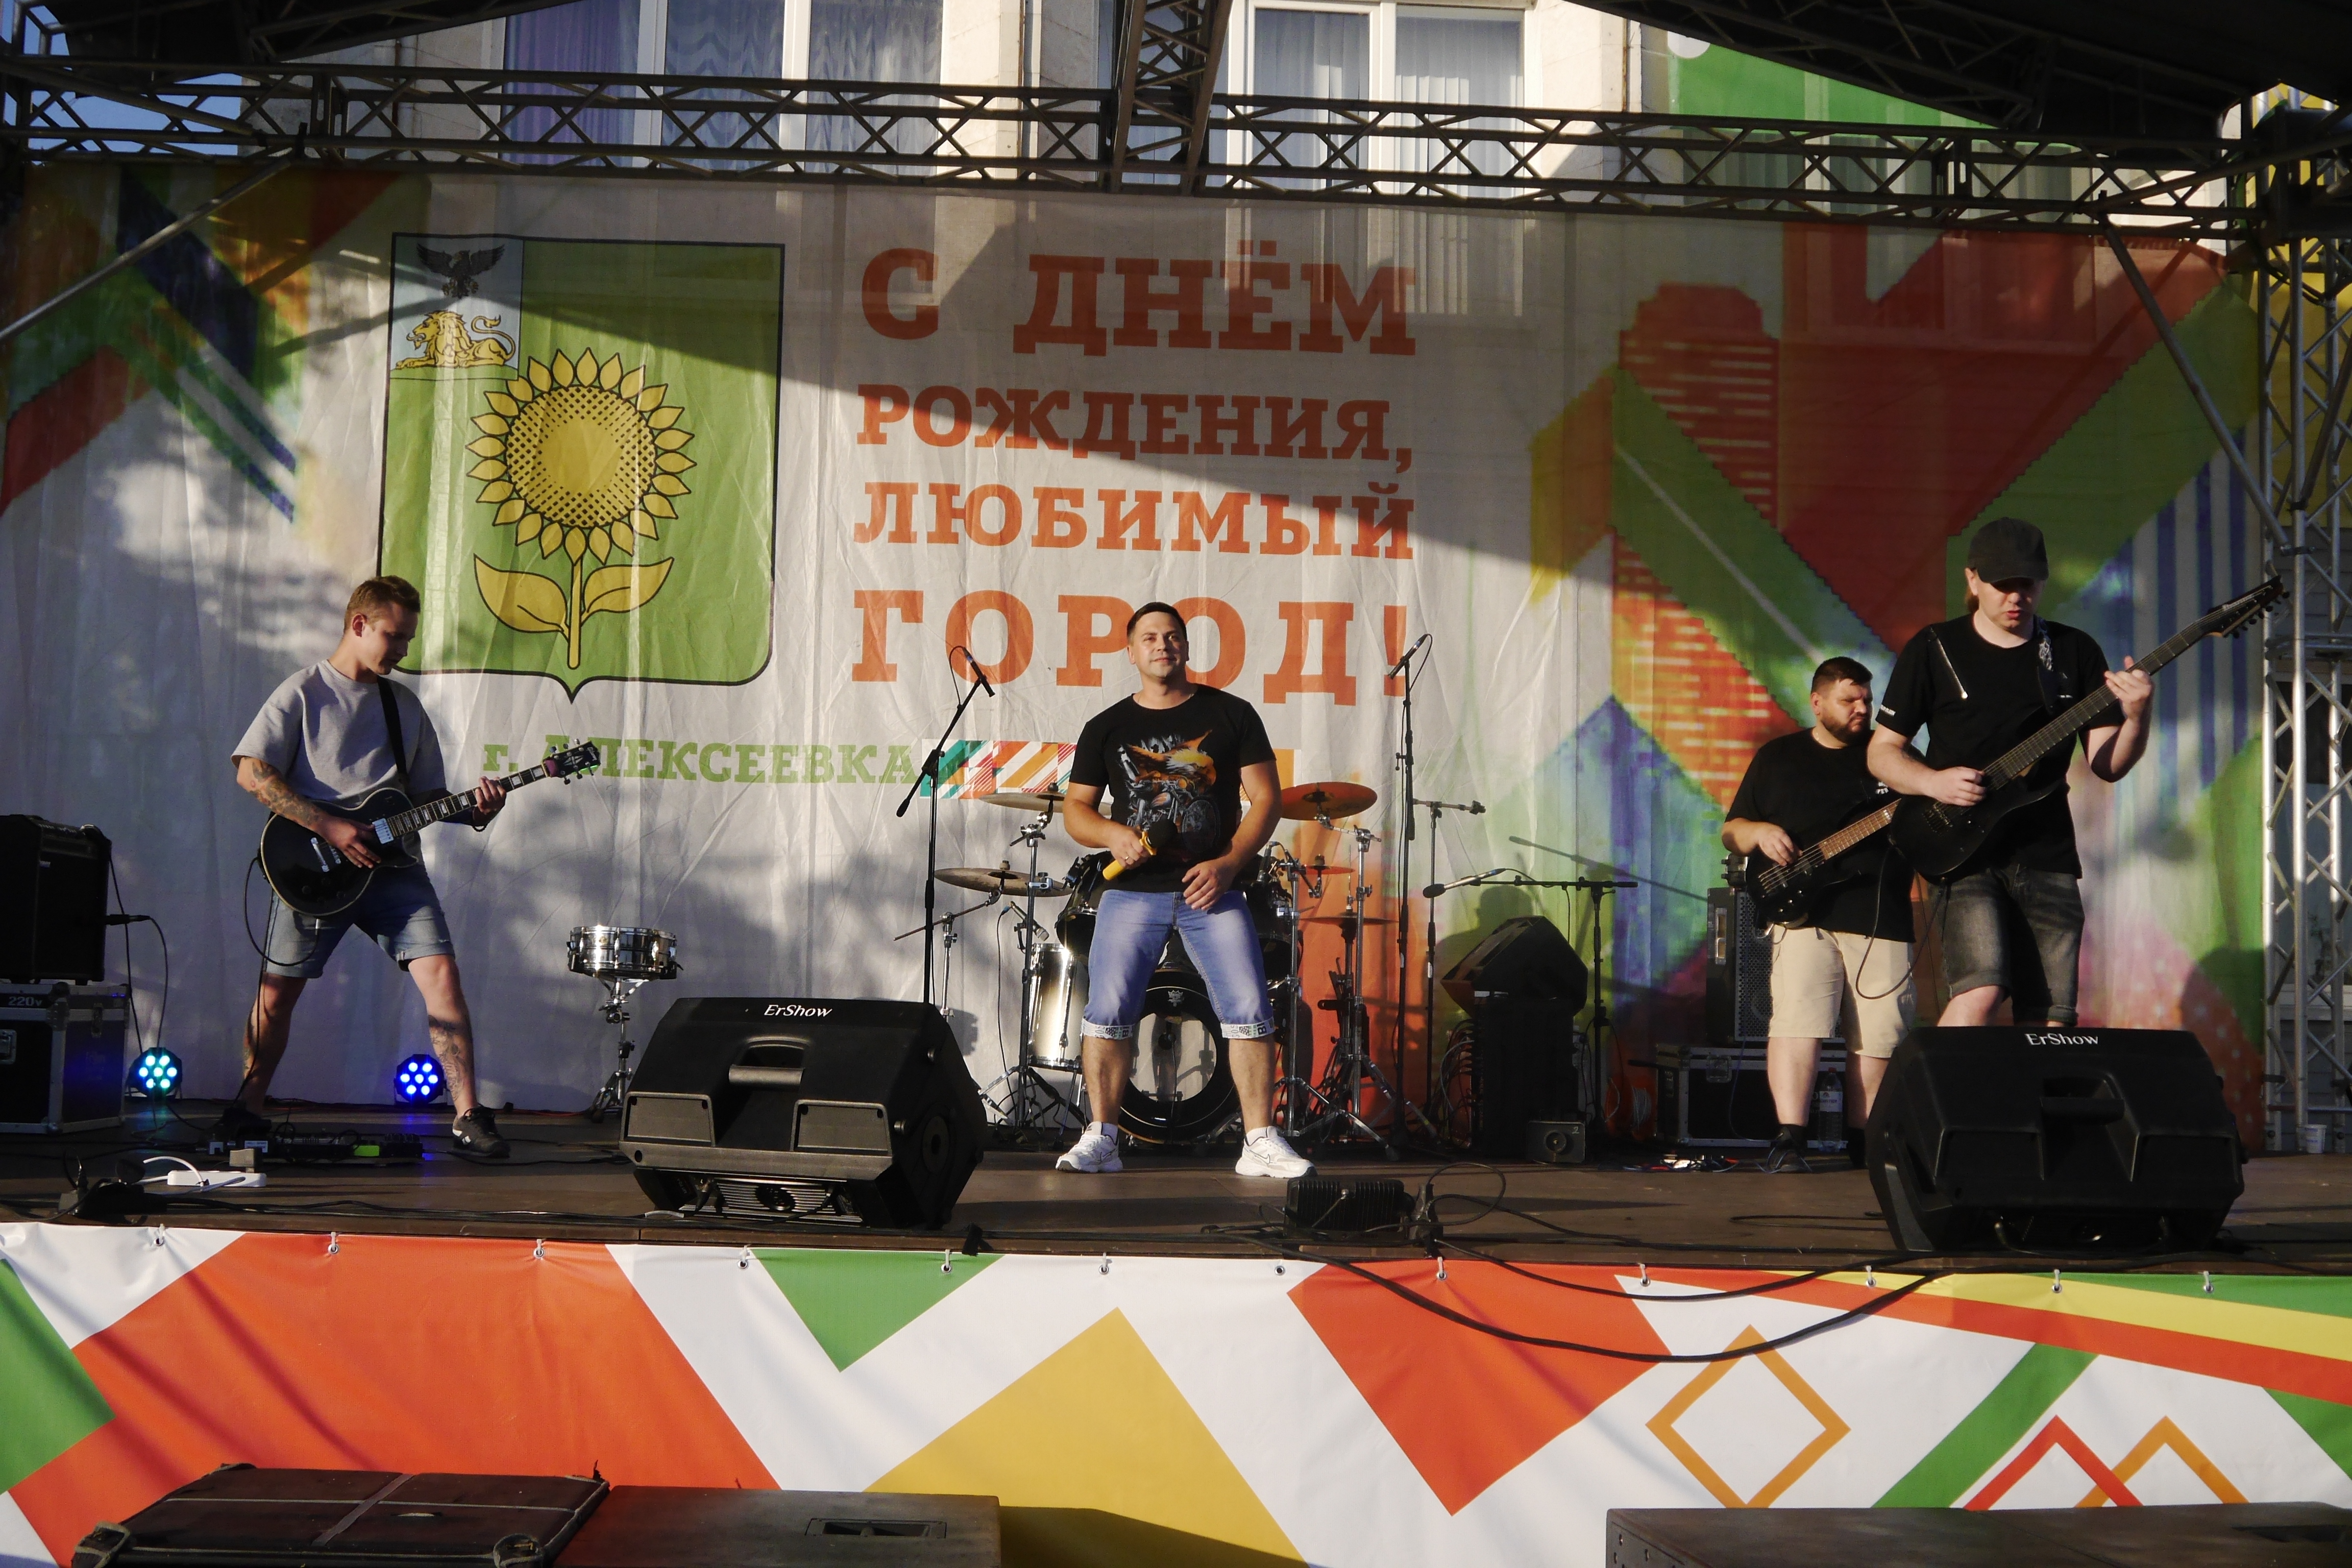 Выступление "Отражённых объектов" на Дне города Алексеевки. Часть I